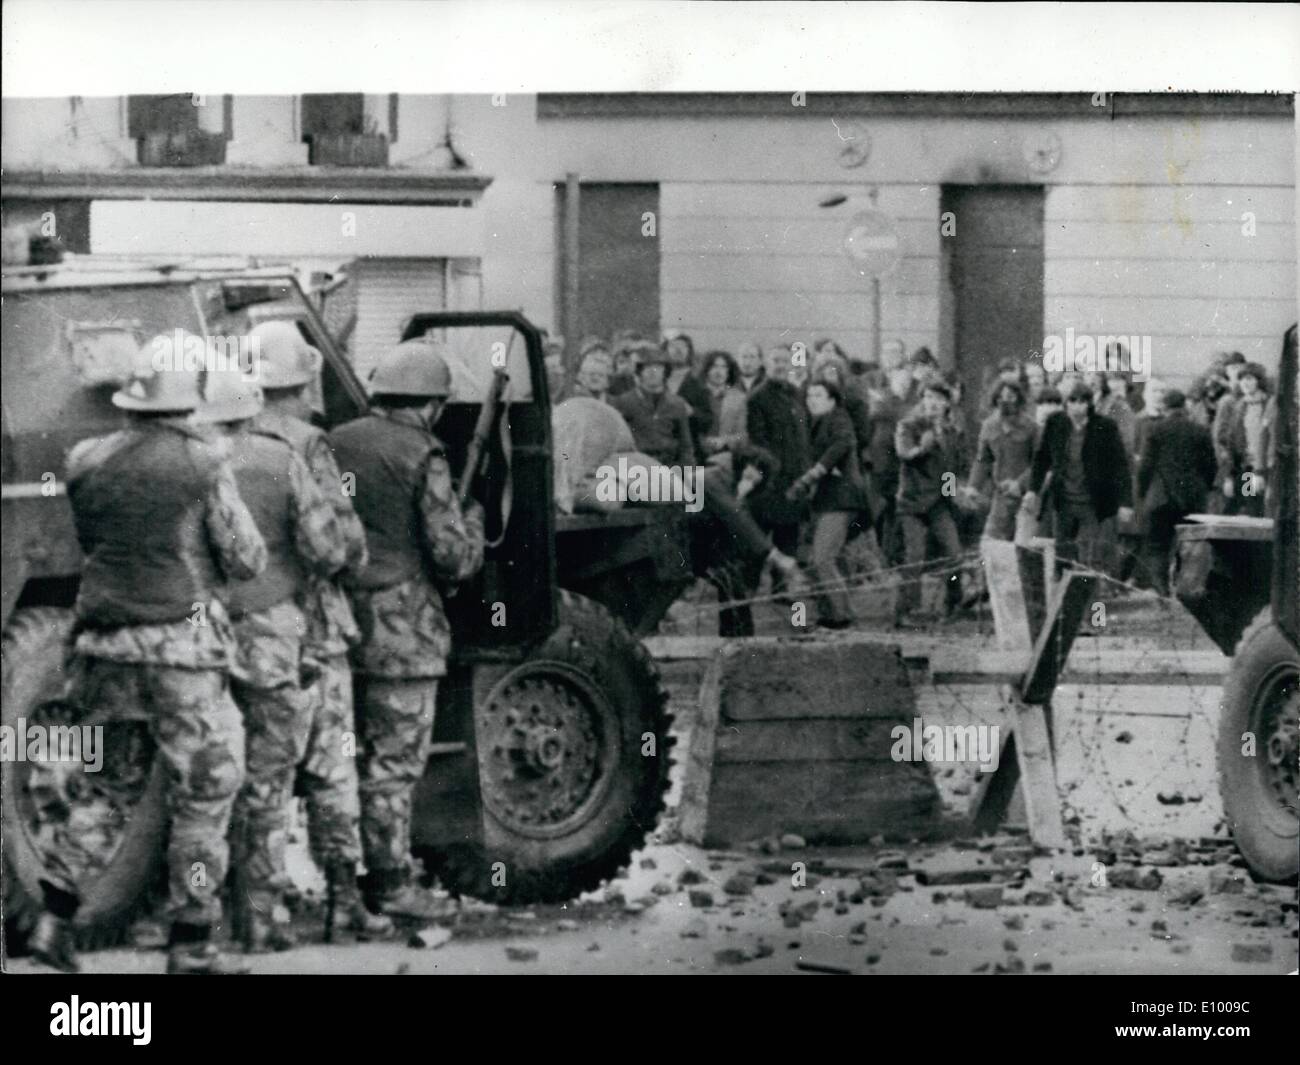 Gen 01, 1972 - 13 Ucciso in Londonderry: tredici uomini erano stati uccisi ieri come i paracadutisti dell'esercito ha rotto un bandito i diritti civili marzo a Londonderry, che si è trasformato in una sommossa sul bordo della Cattolica Romana Bogside. È stato il peggior incidente singolo dell'intero Ulster crisi. General Maggiore Robert Ford, comandante delle forze di terra dell'Irlanda del Nord, ha respinto le accuse che le truppe aveva girato prima o sparato indiscriminatamente. ''I primi scatti è venuto da banditi terroristi e i militari hanno sparato single, volte scatti in ritorno'', ha insistito Foto Stock